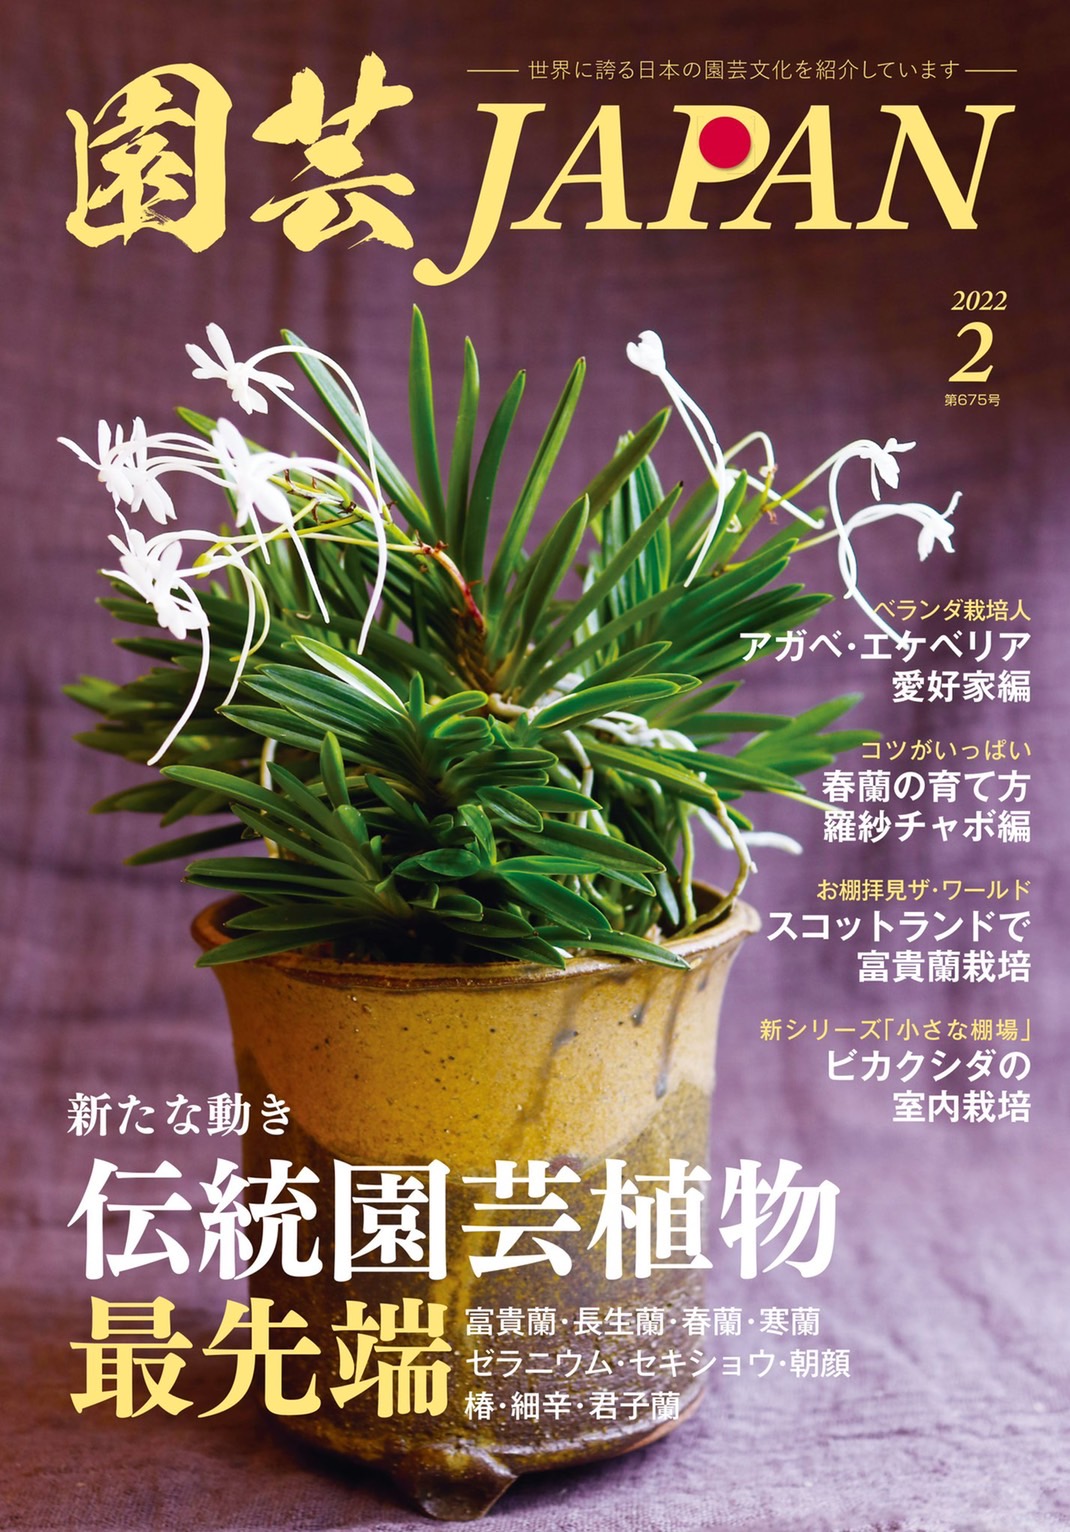 【本日発売】園芸雑誌にINDOOR HOBBIESが載ります。